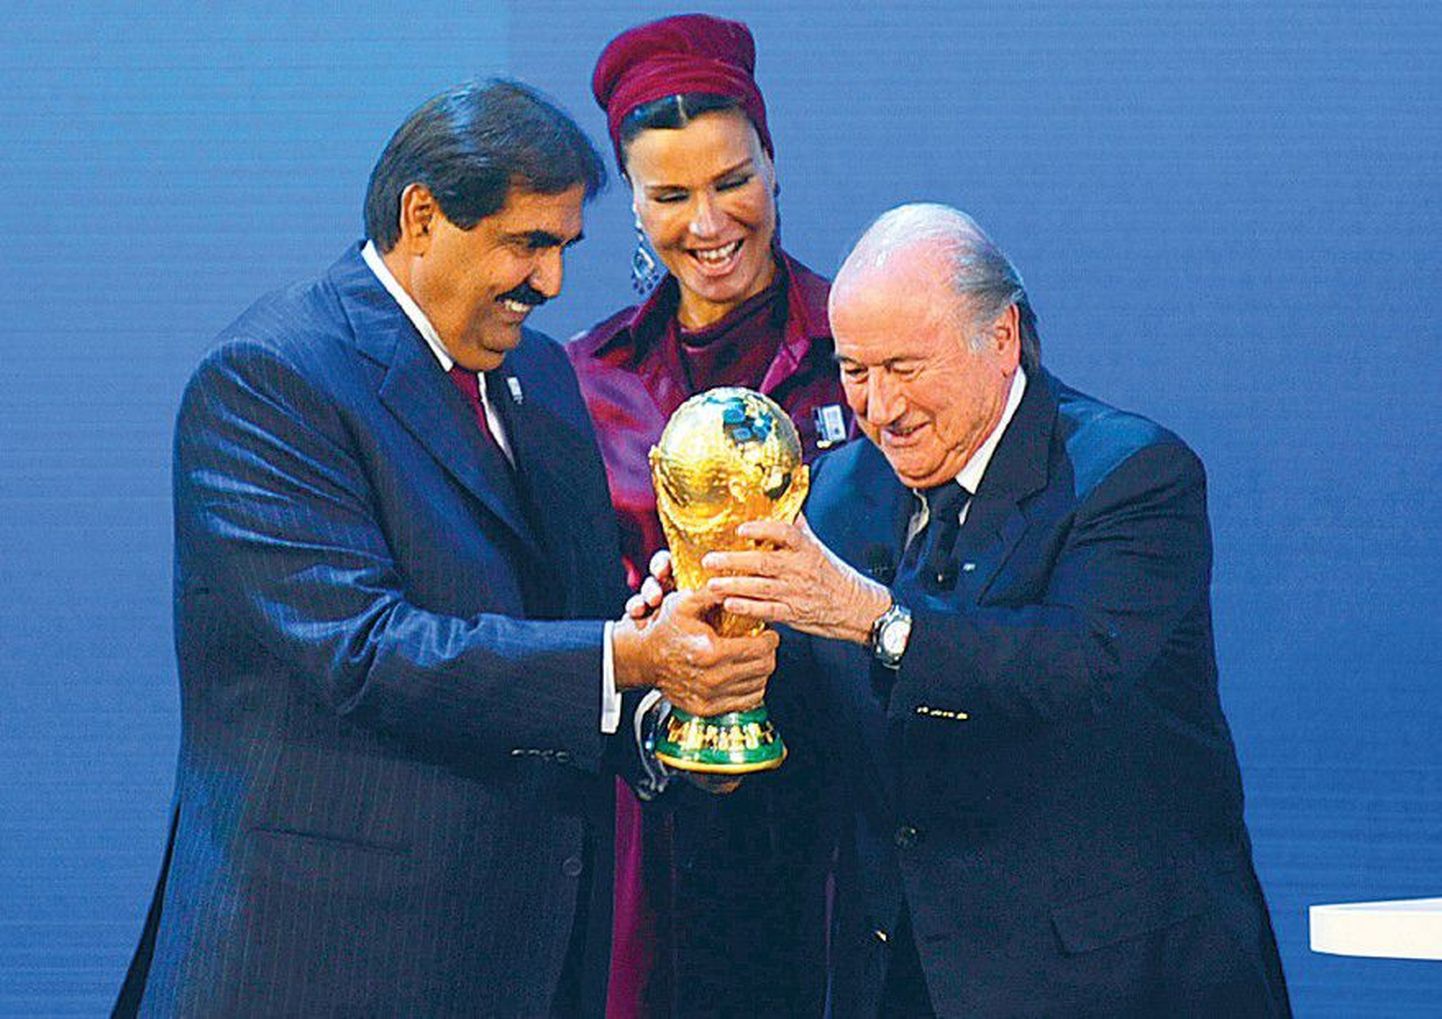 Президент Международной федерации футбольных ассоциаций (ФИФА) Зепп Блаттер (справа) вручает эмиру Катара Хамаду бен Халифе Аль Тани и его супруге Мозах бинт Насер аль-Миснед копию Кубка мира в знак того, что честь провести ЧМ по футболу 2022 года выпала Катару.